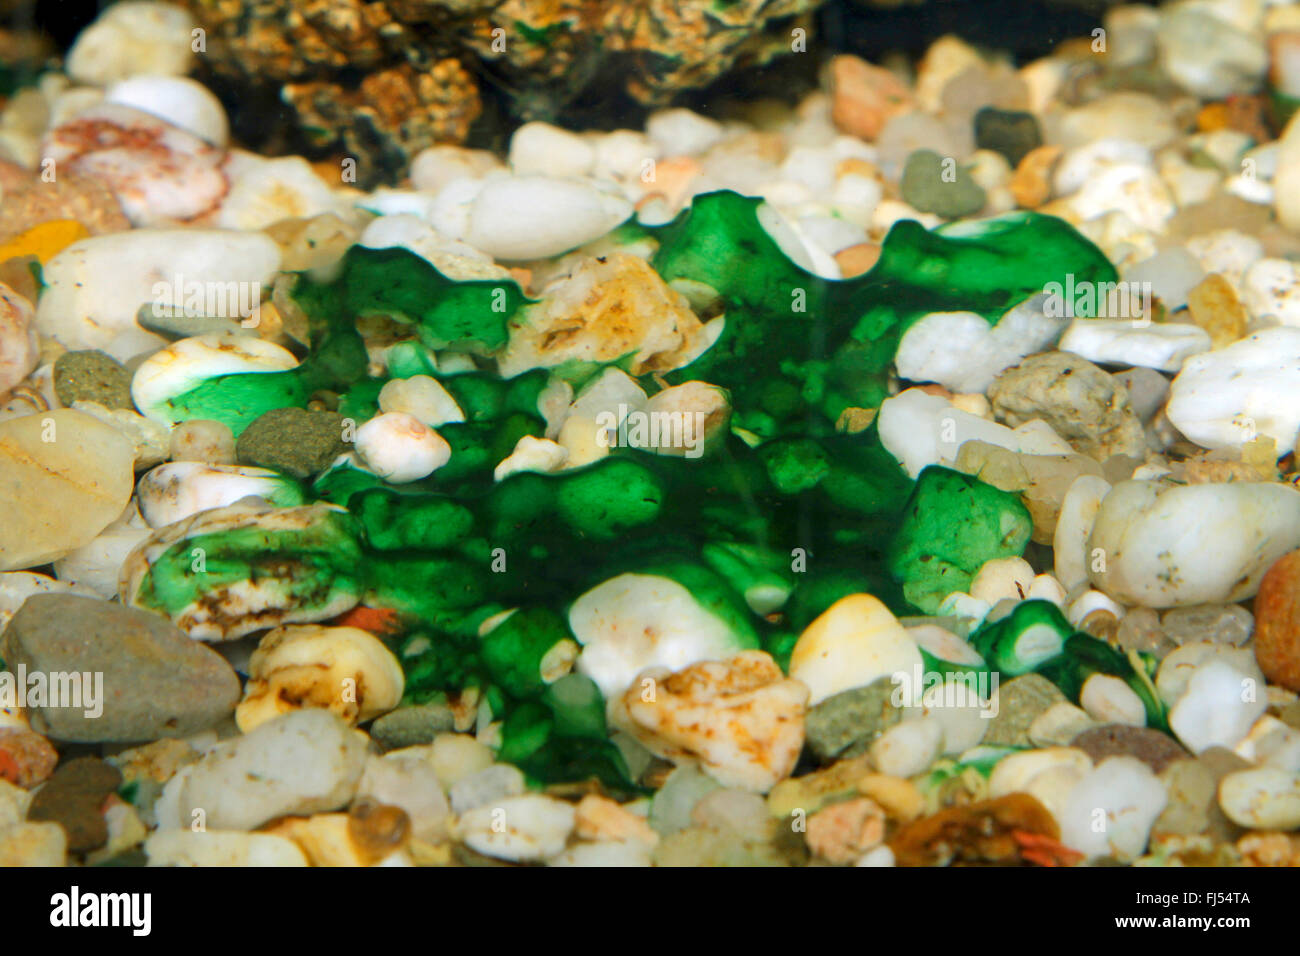 Ghiaia dell'acquario immagini e fotografie stock ad alta risoluzione - Alamy